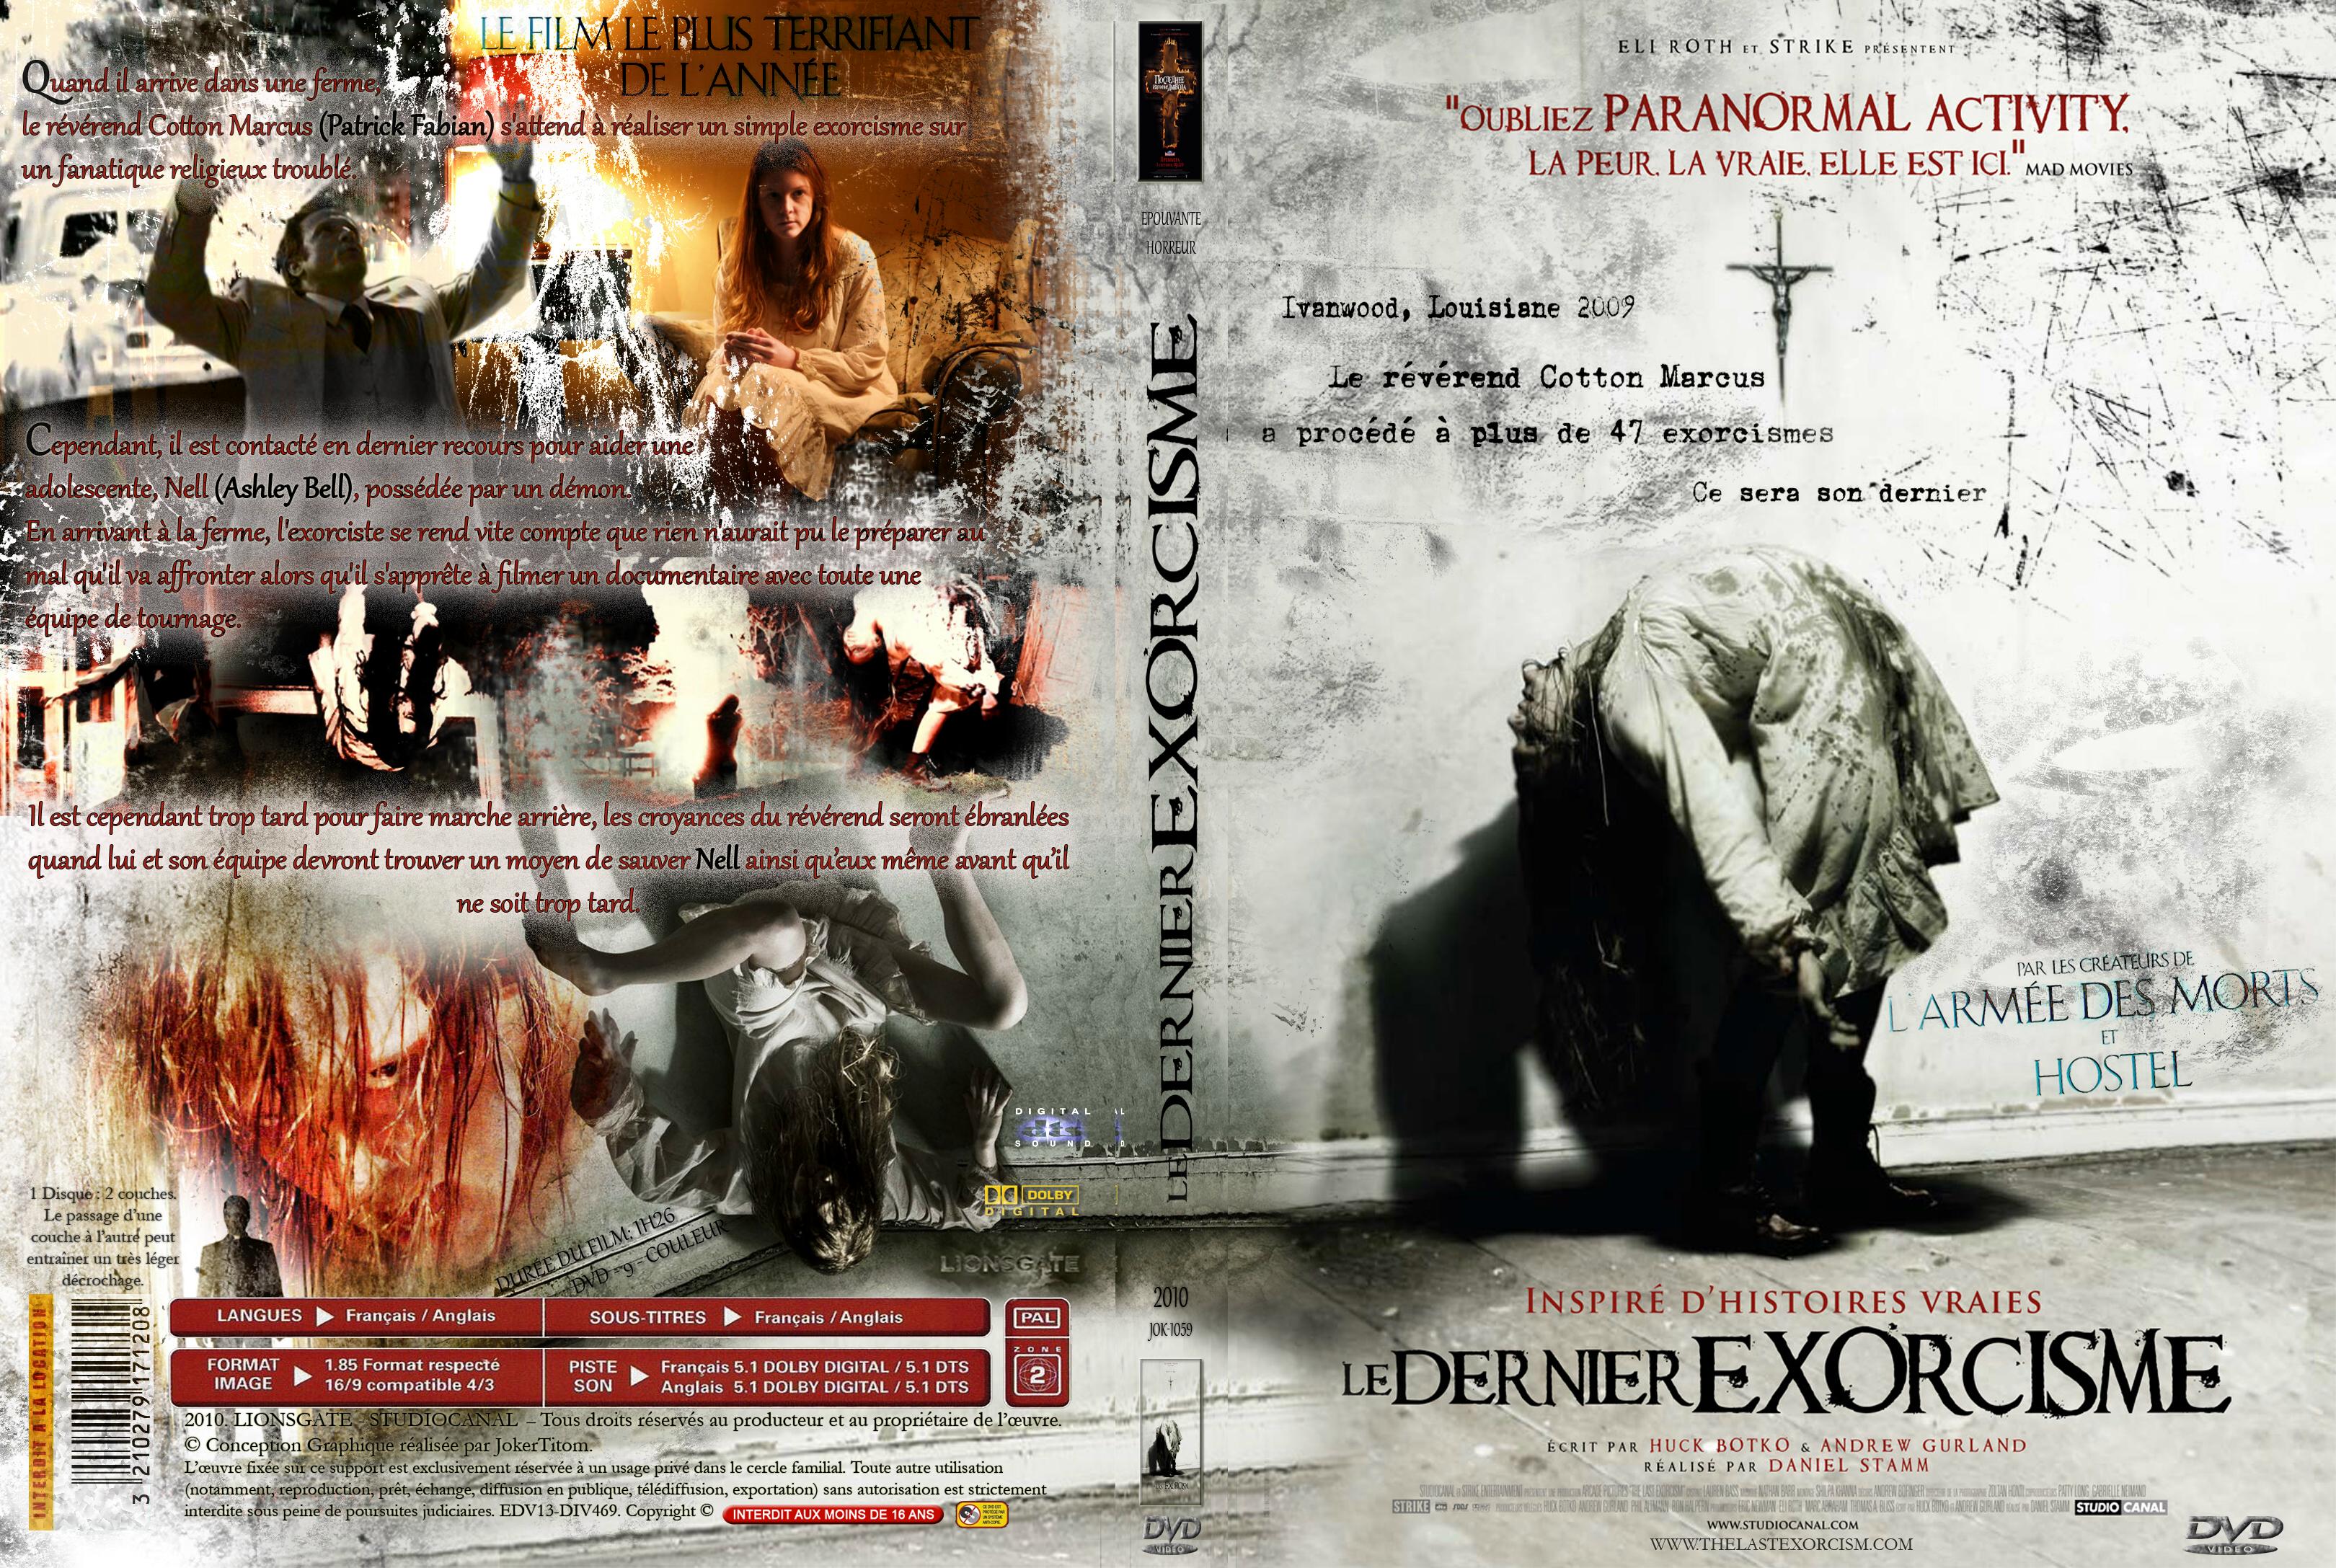 Jaquette DVD Le dernier exorcisme custom - SLIM